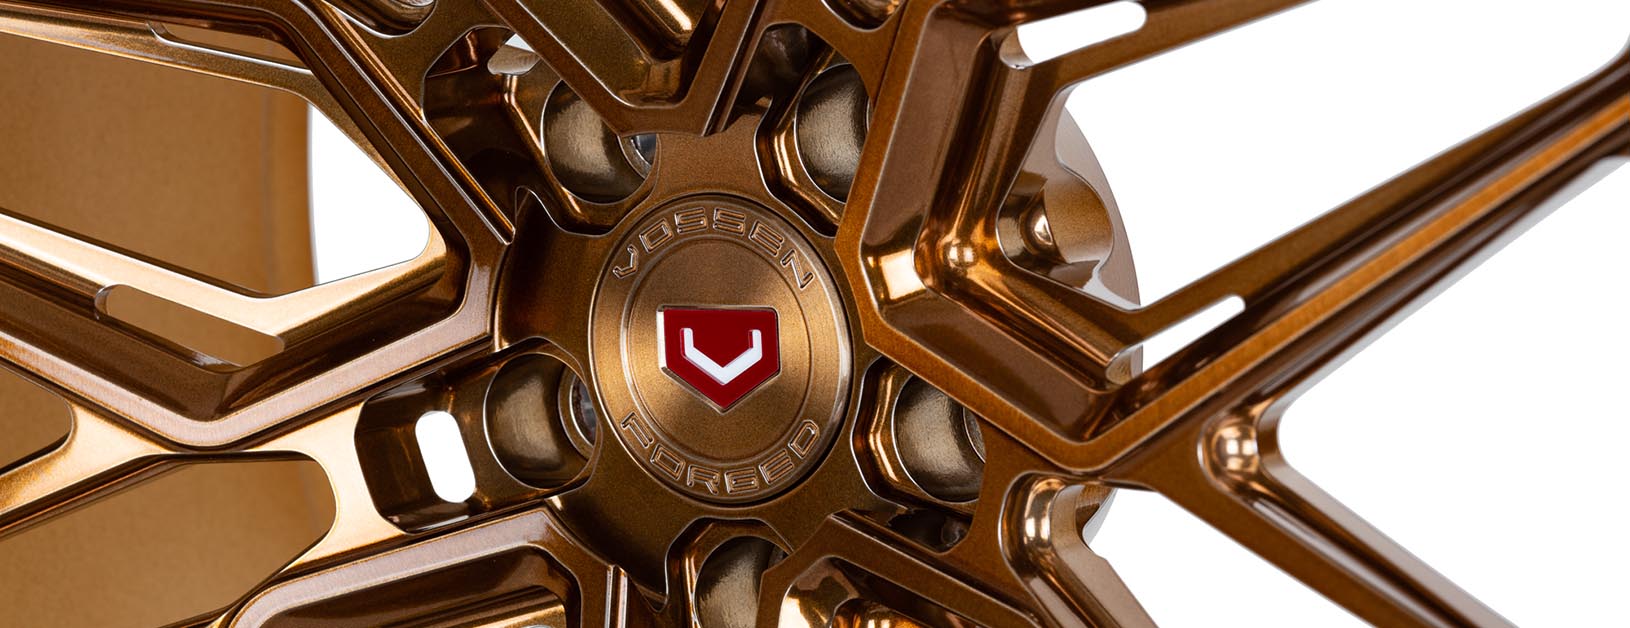 Vossen-EVO-5R-C15-Brickell-Bronze-Polished-EVO-Series-©-Vossen-Wheels-2019-0037-Edit-1